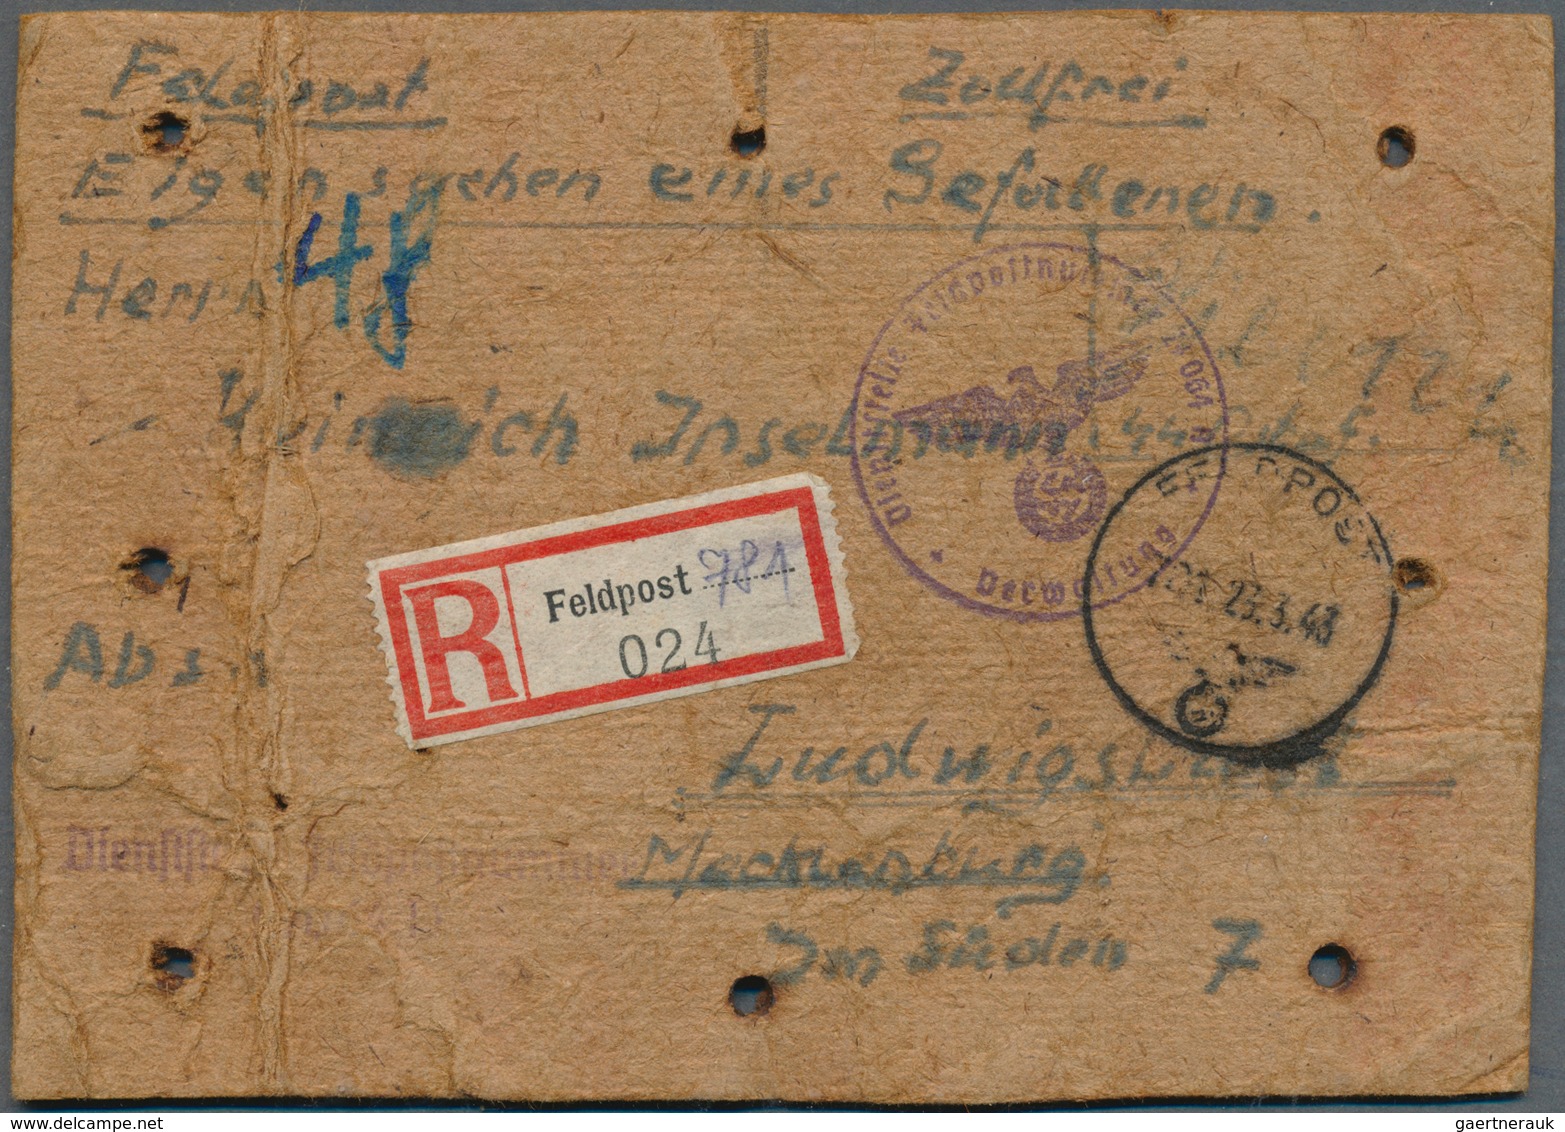 32035 Feldpost 2. Weltkrieg: 1937/1945, vielseitige kleine Feldpostsammlung von über 90 Belegen mit intere